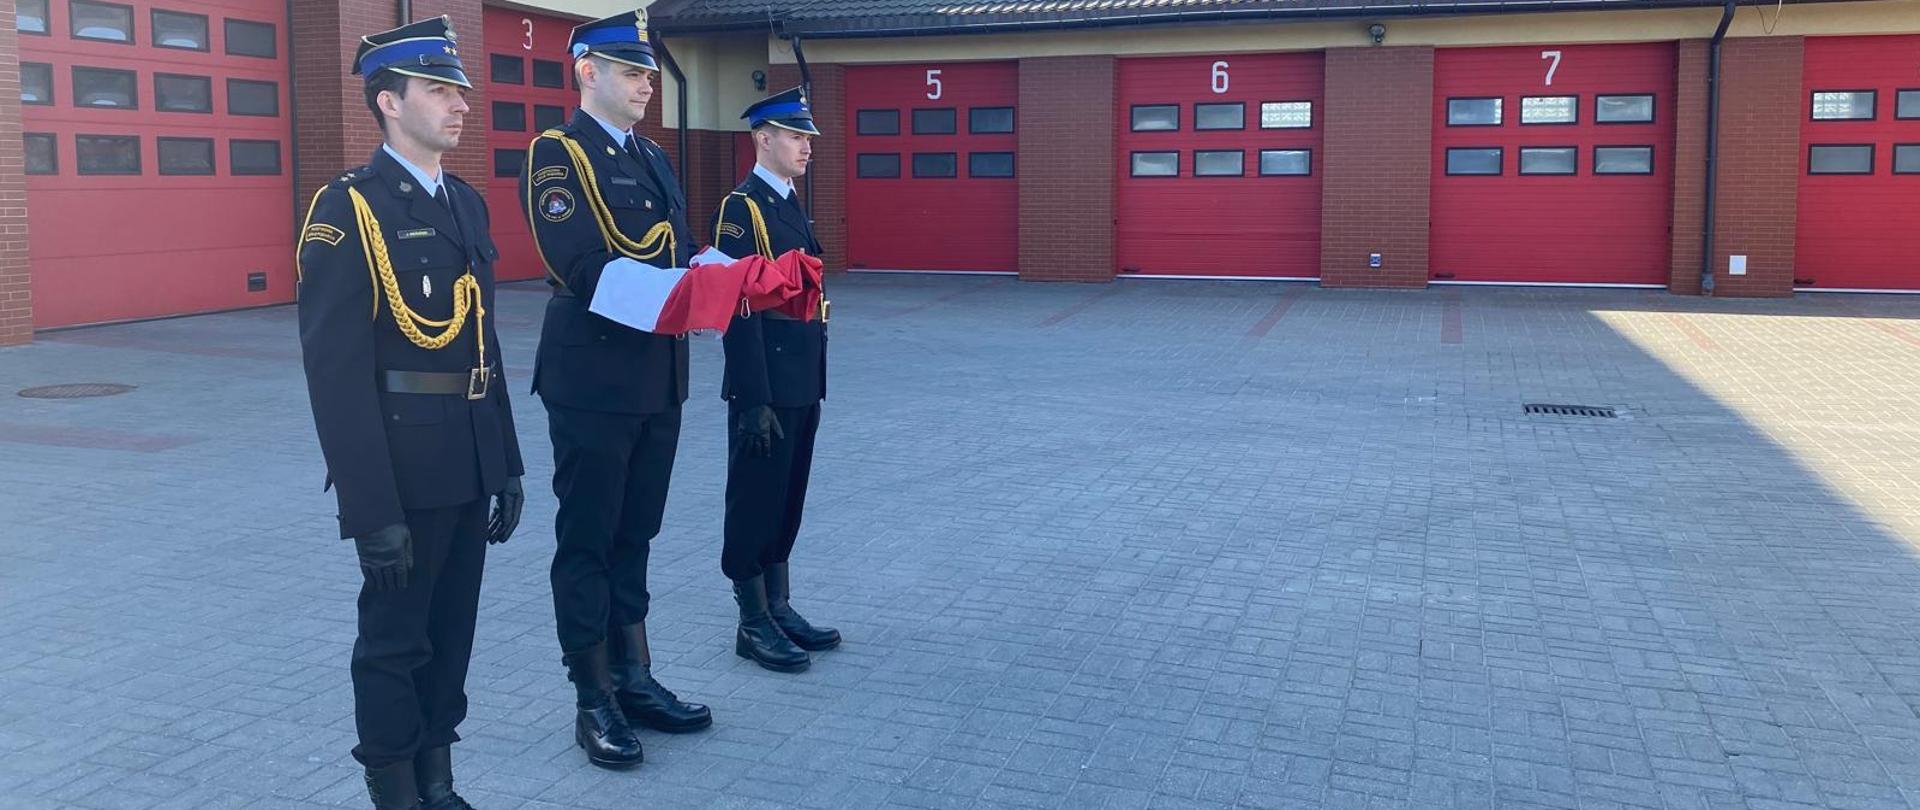 Poczet flagowy Komendy Powiatowej Państwowej Straży Pożarnej w Rypinie oczekuje na przemarsz po placu Jednostki Ratowniczo-Gaśniczej, w celu zawieszenia Flagi Państwowej na maszcie.